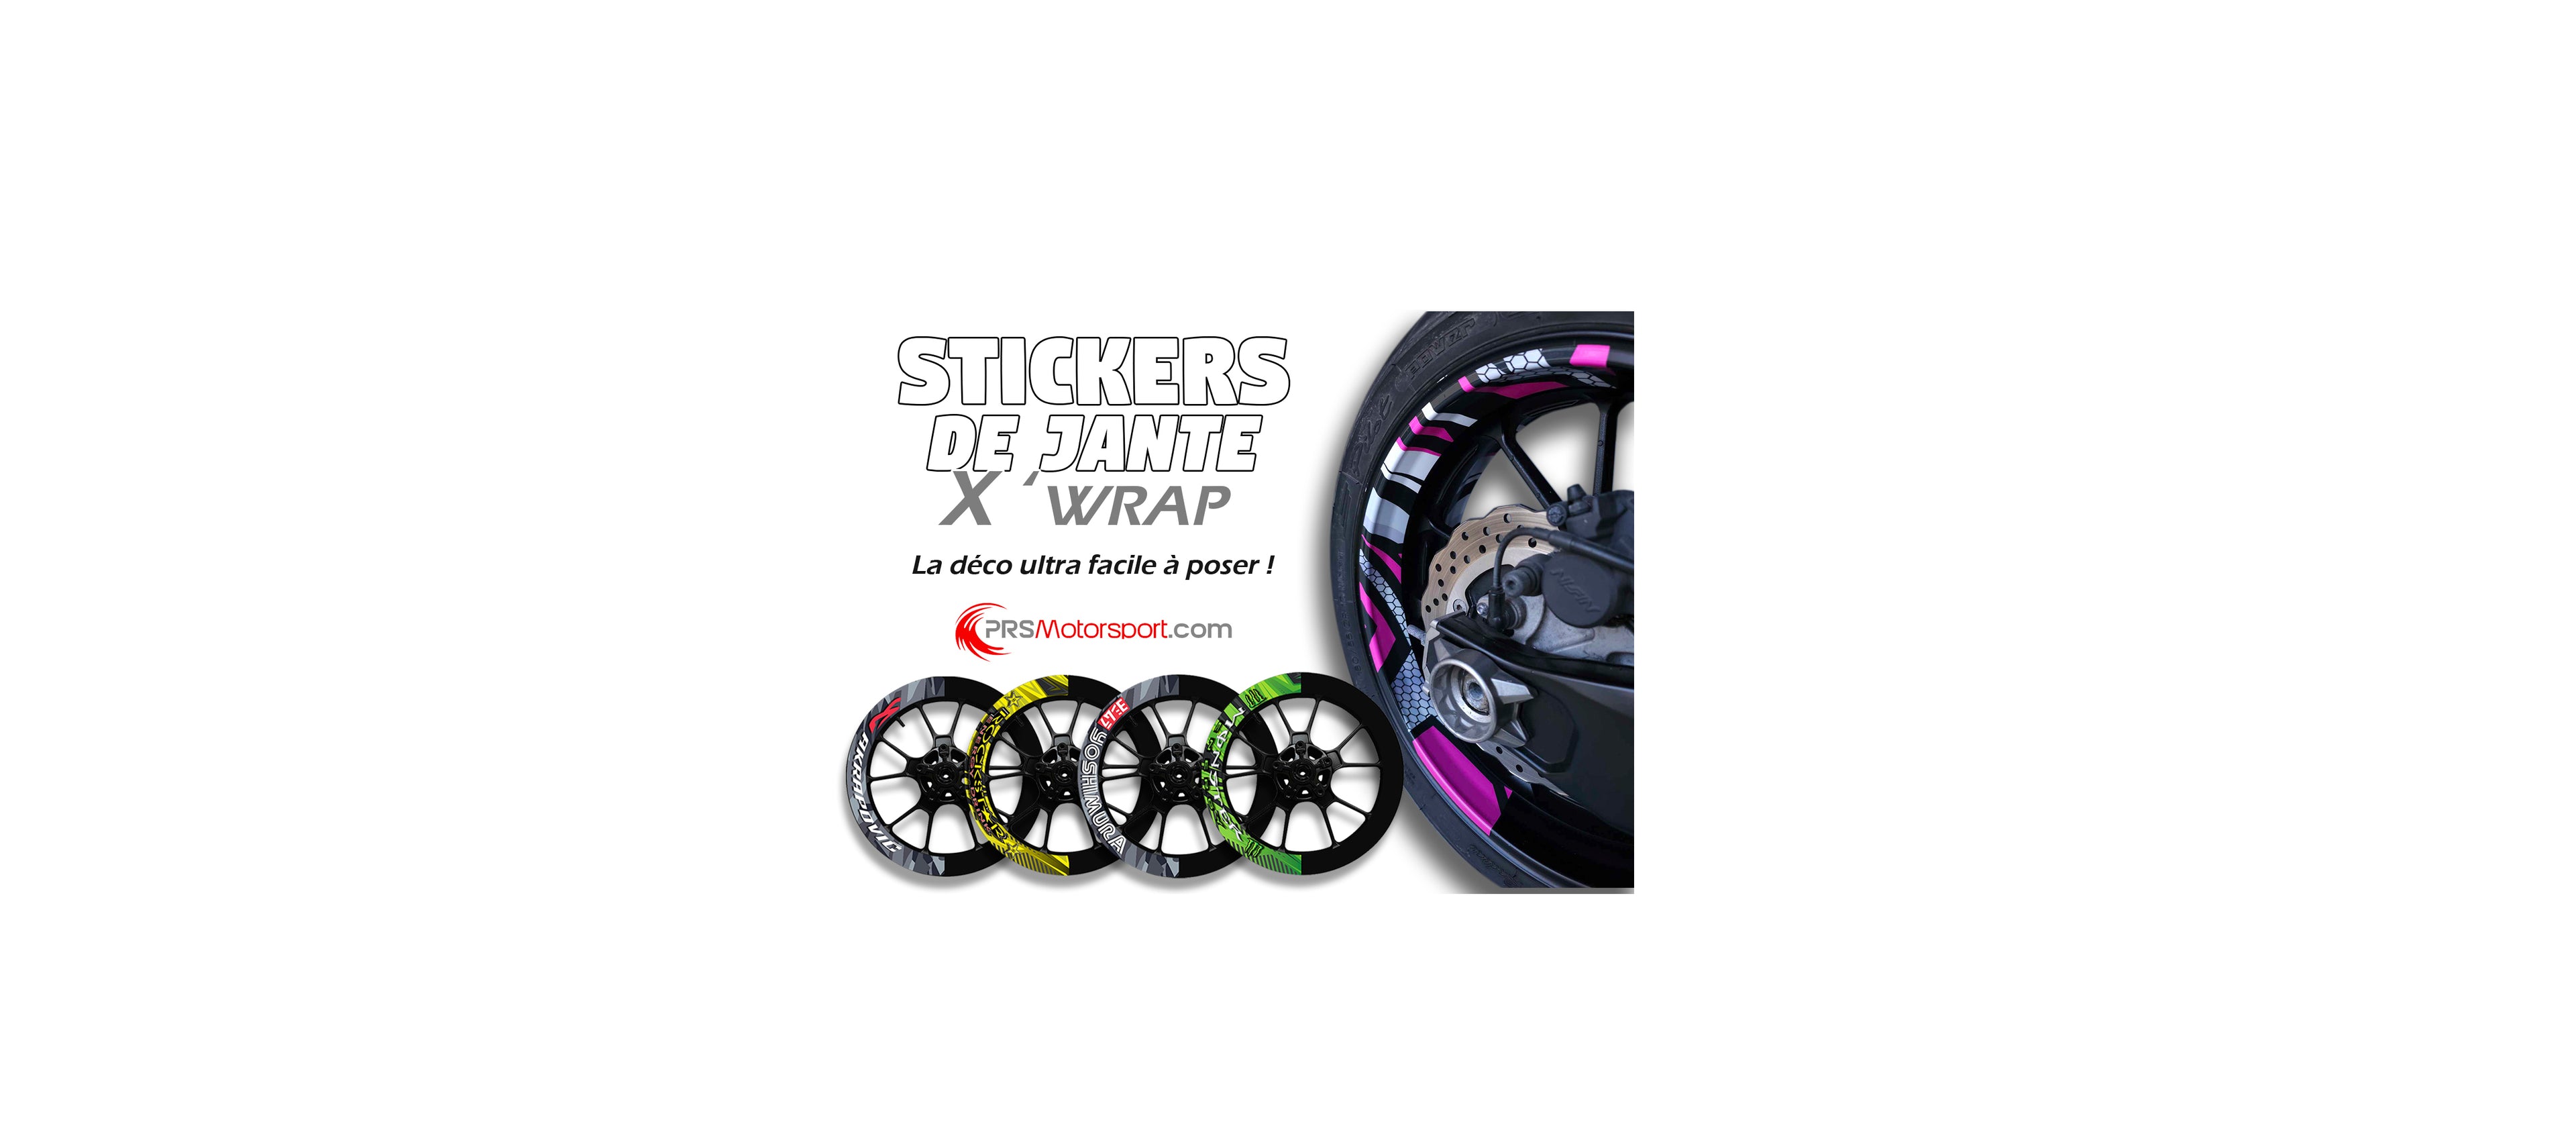 Stickers pour votre moto Moto-sport- - Déco Sticker Store-14.90€